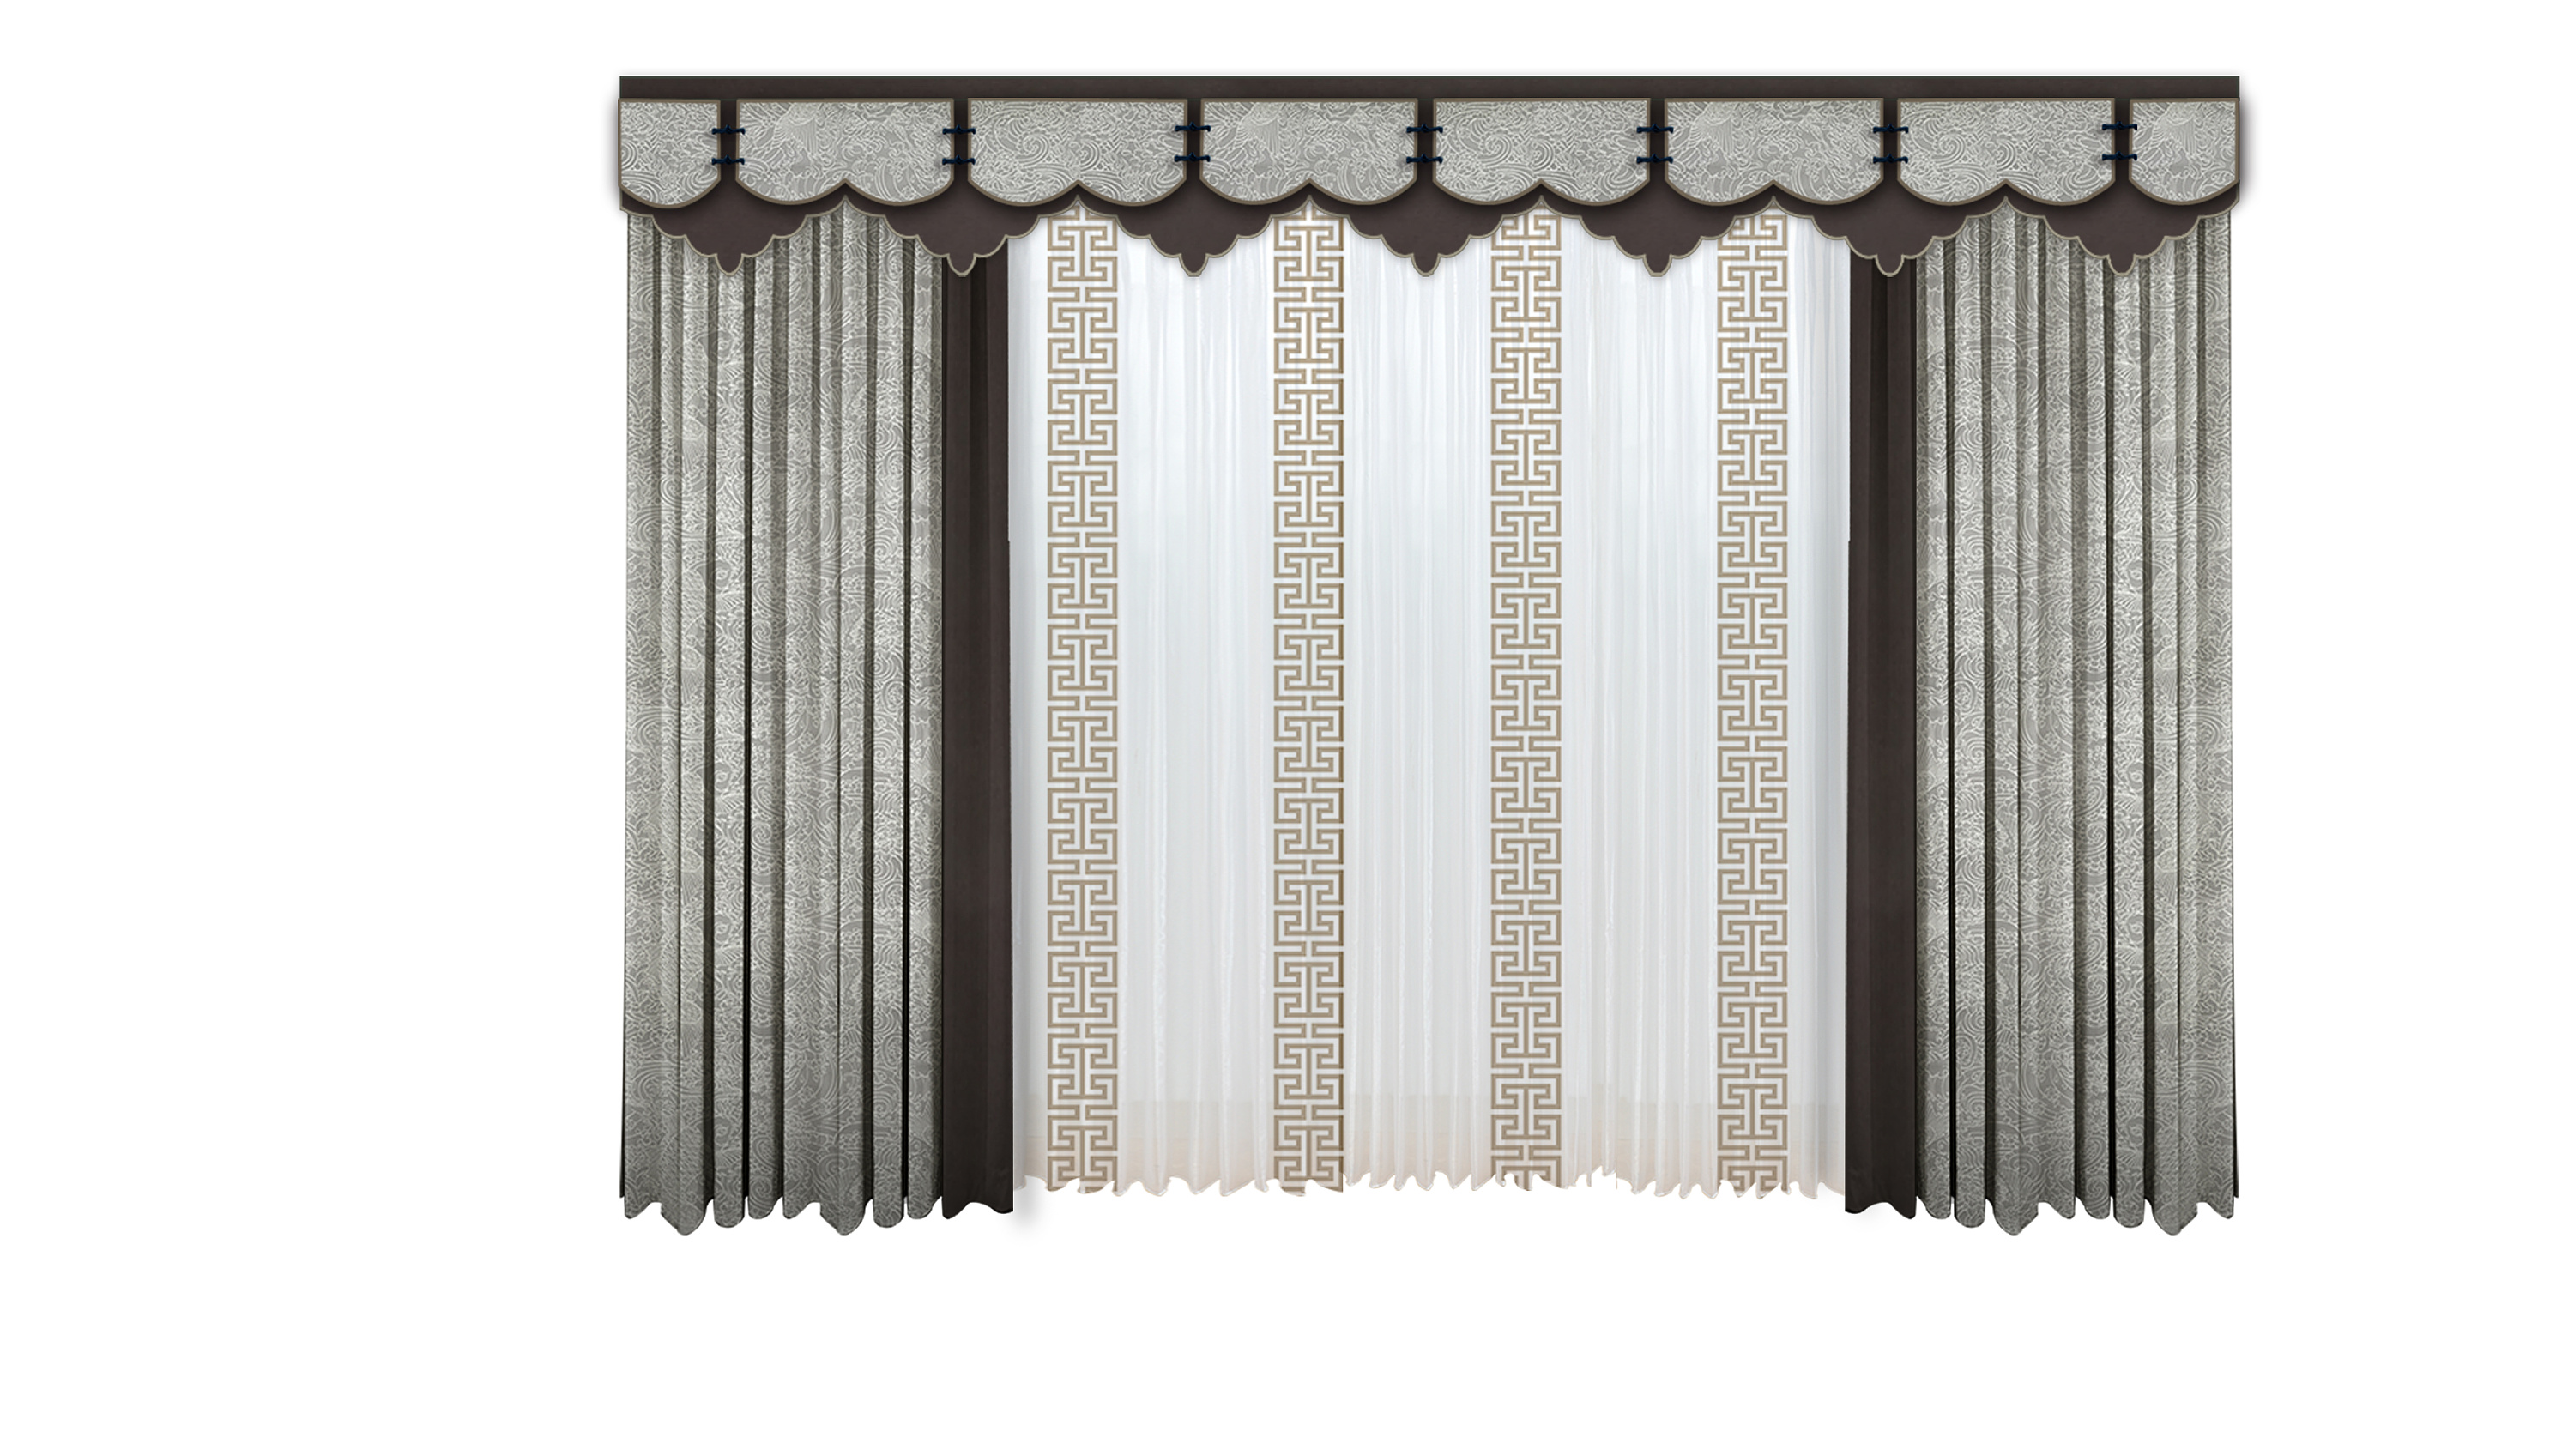 伊莎莱-中式风客厅窗帘效果图-客厅窗帘图片